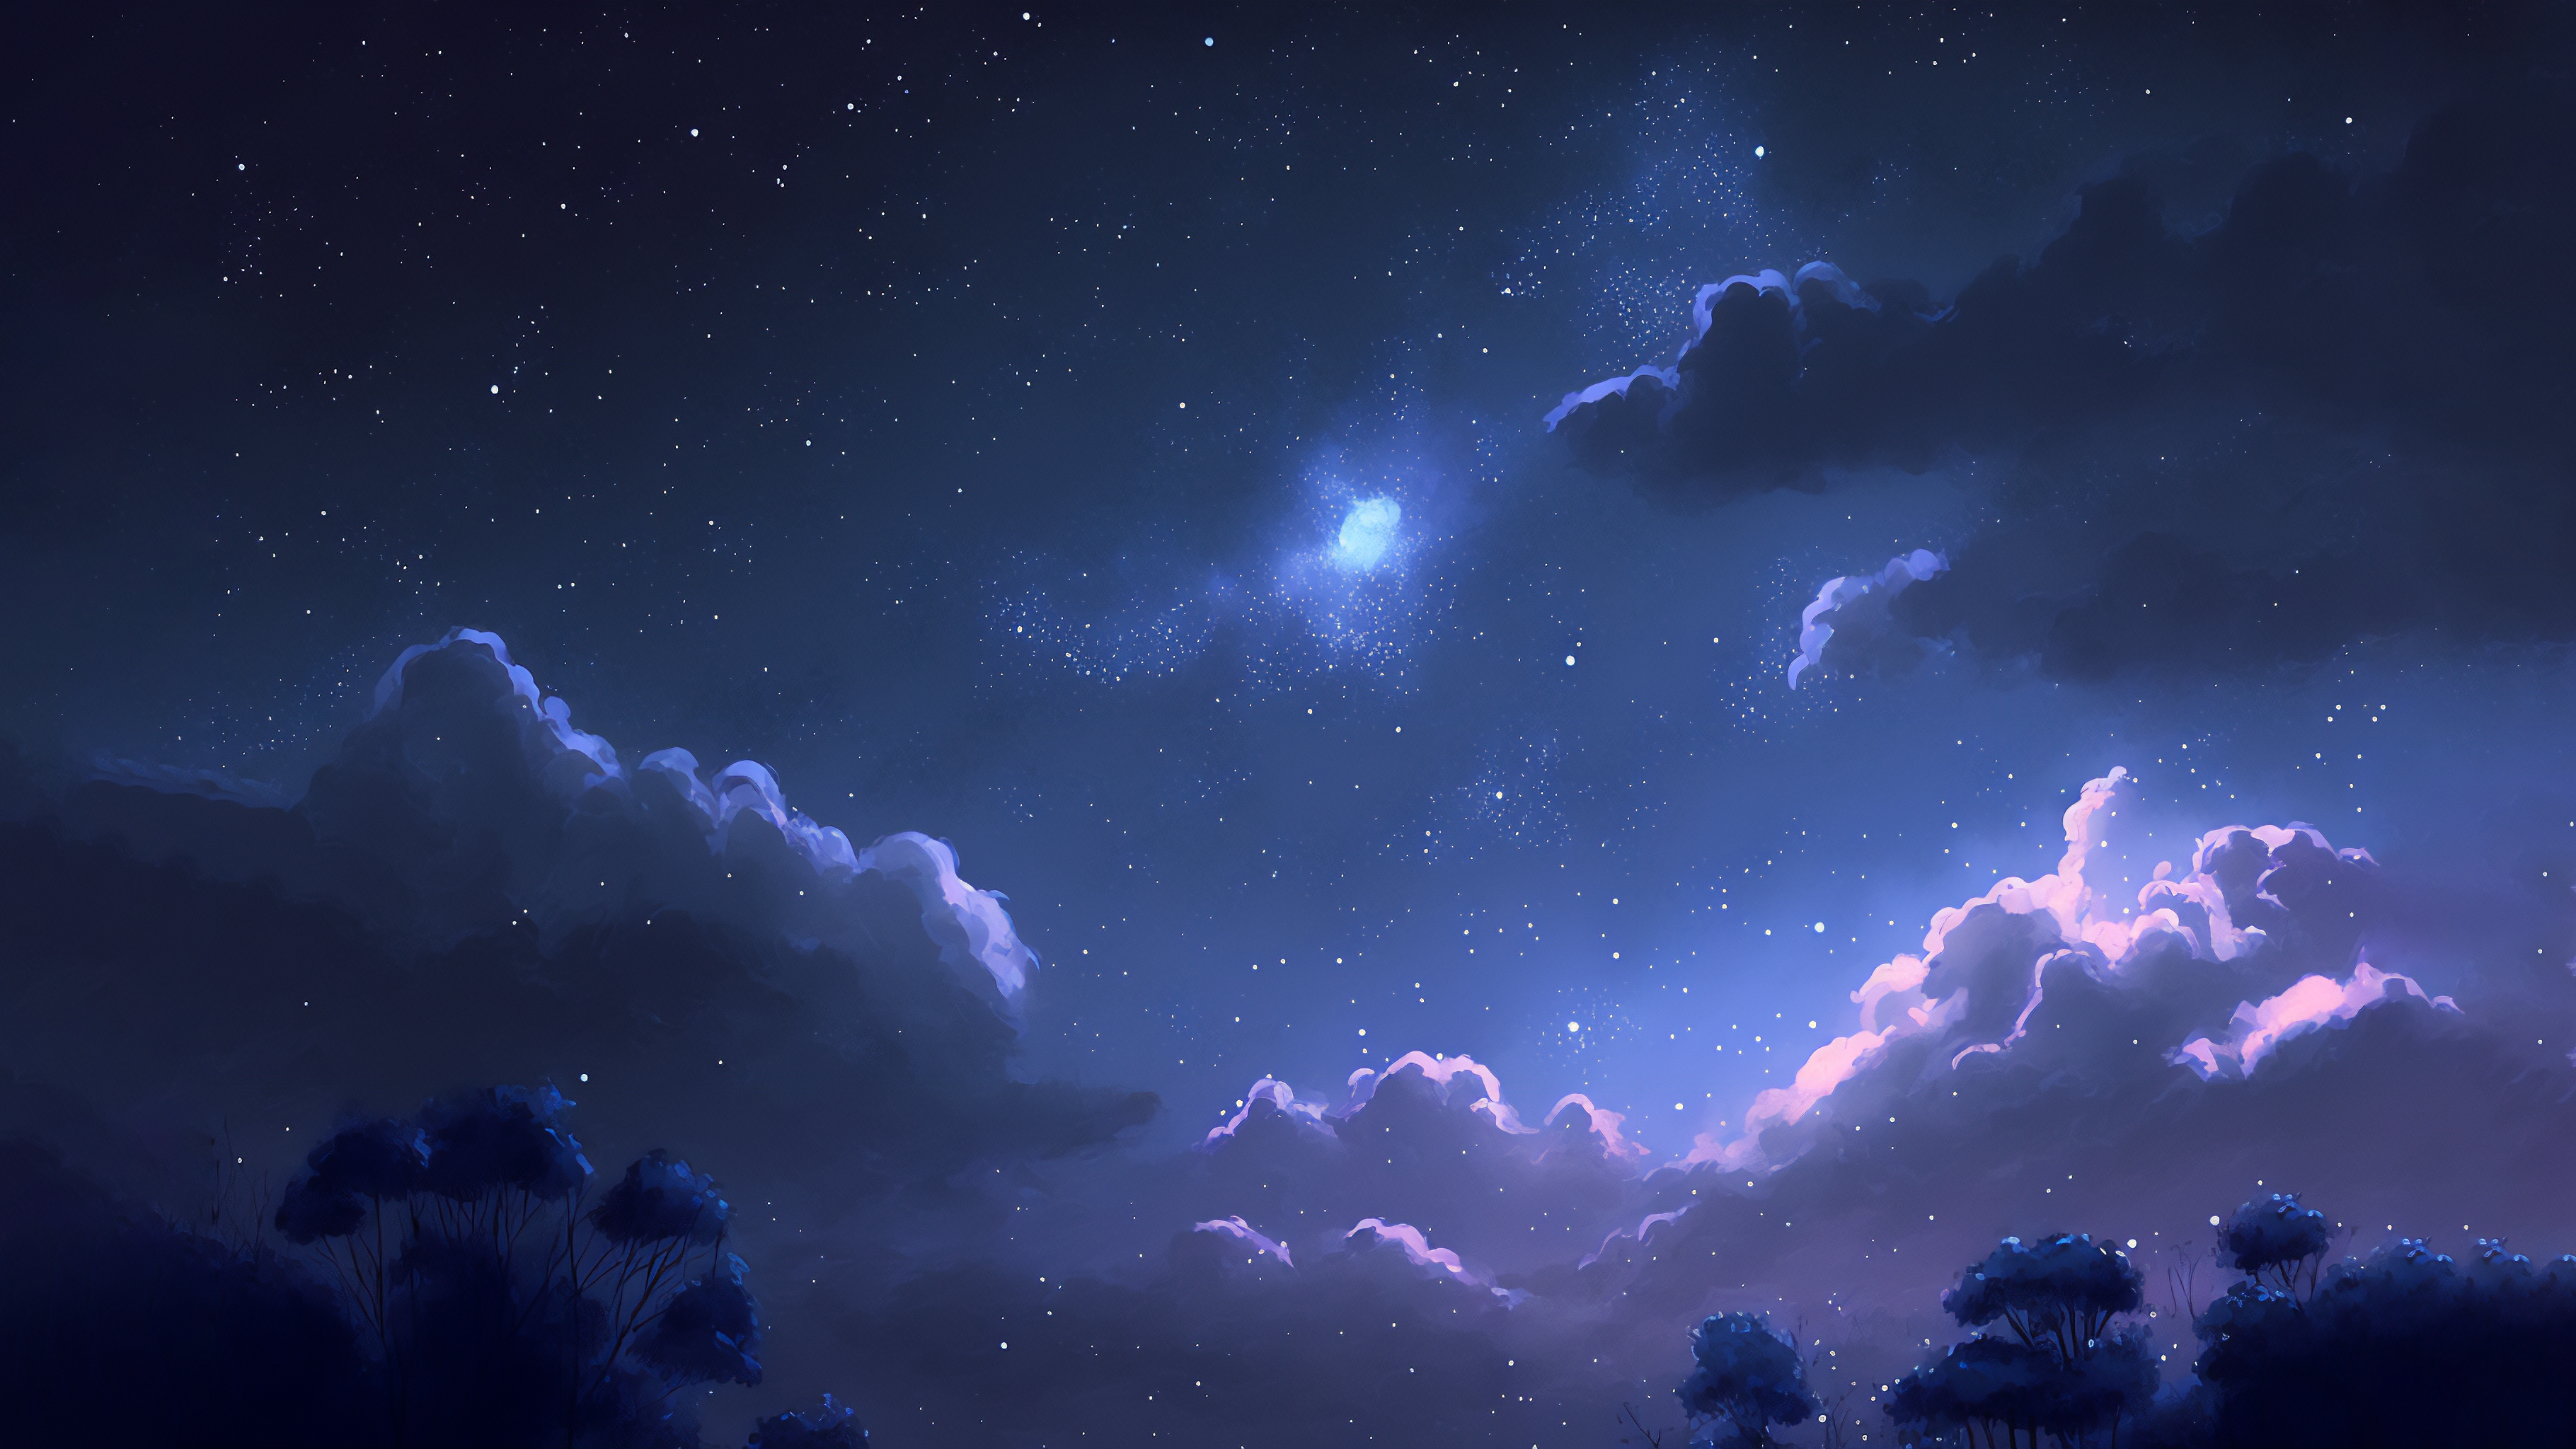 General 3640x2048 AI art trees night clouds blue stars starry night sky